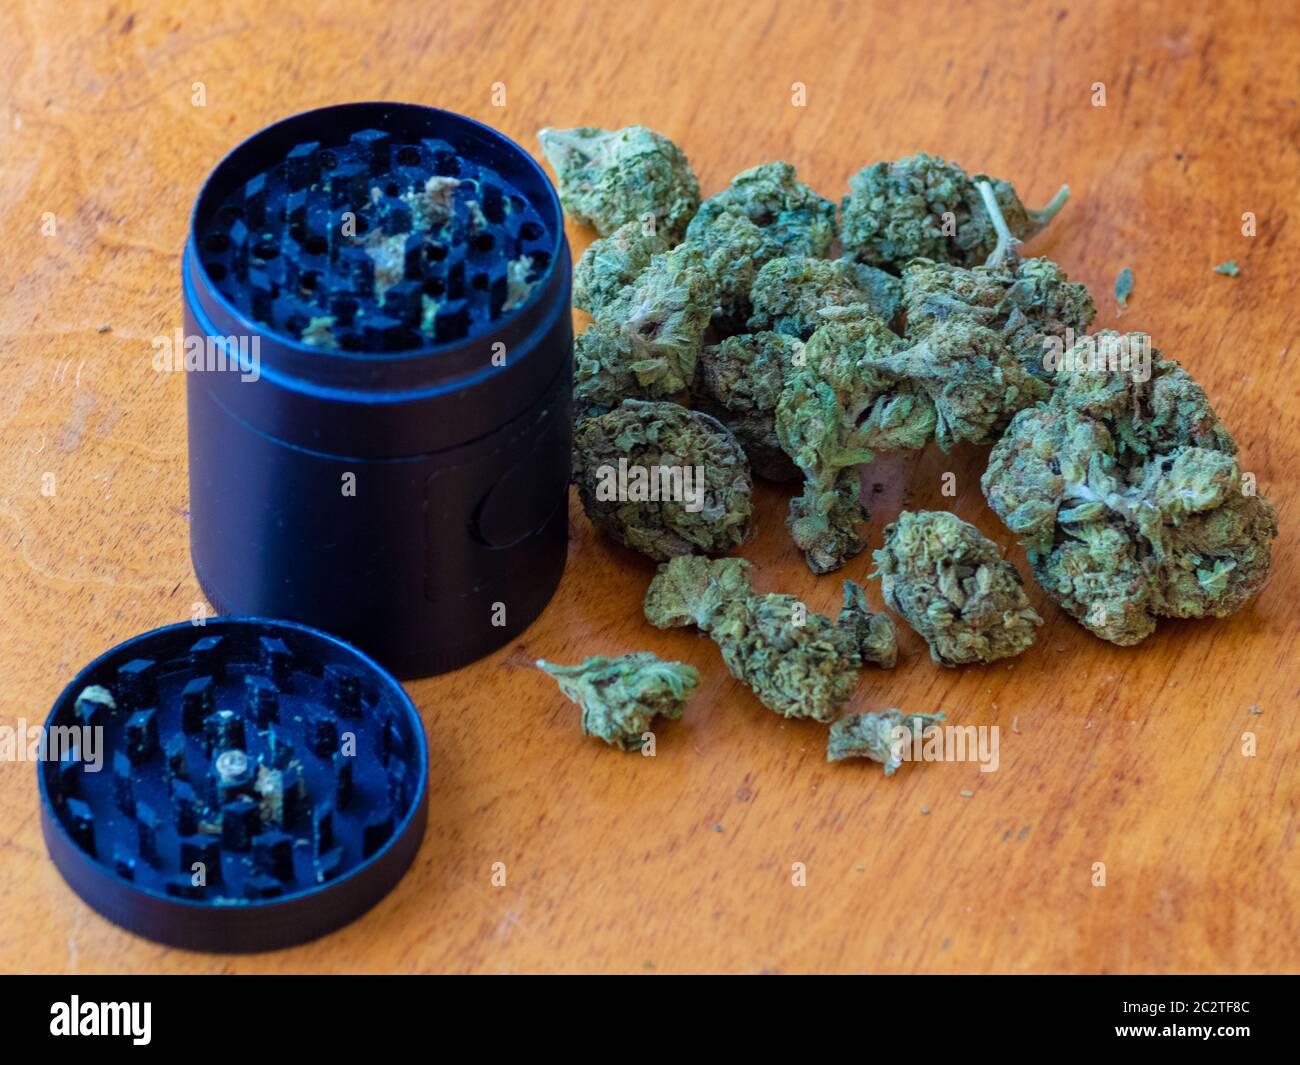 marihuana brote flor de cannabis cierre con molinillo Foto de stock